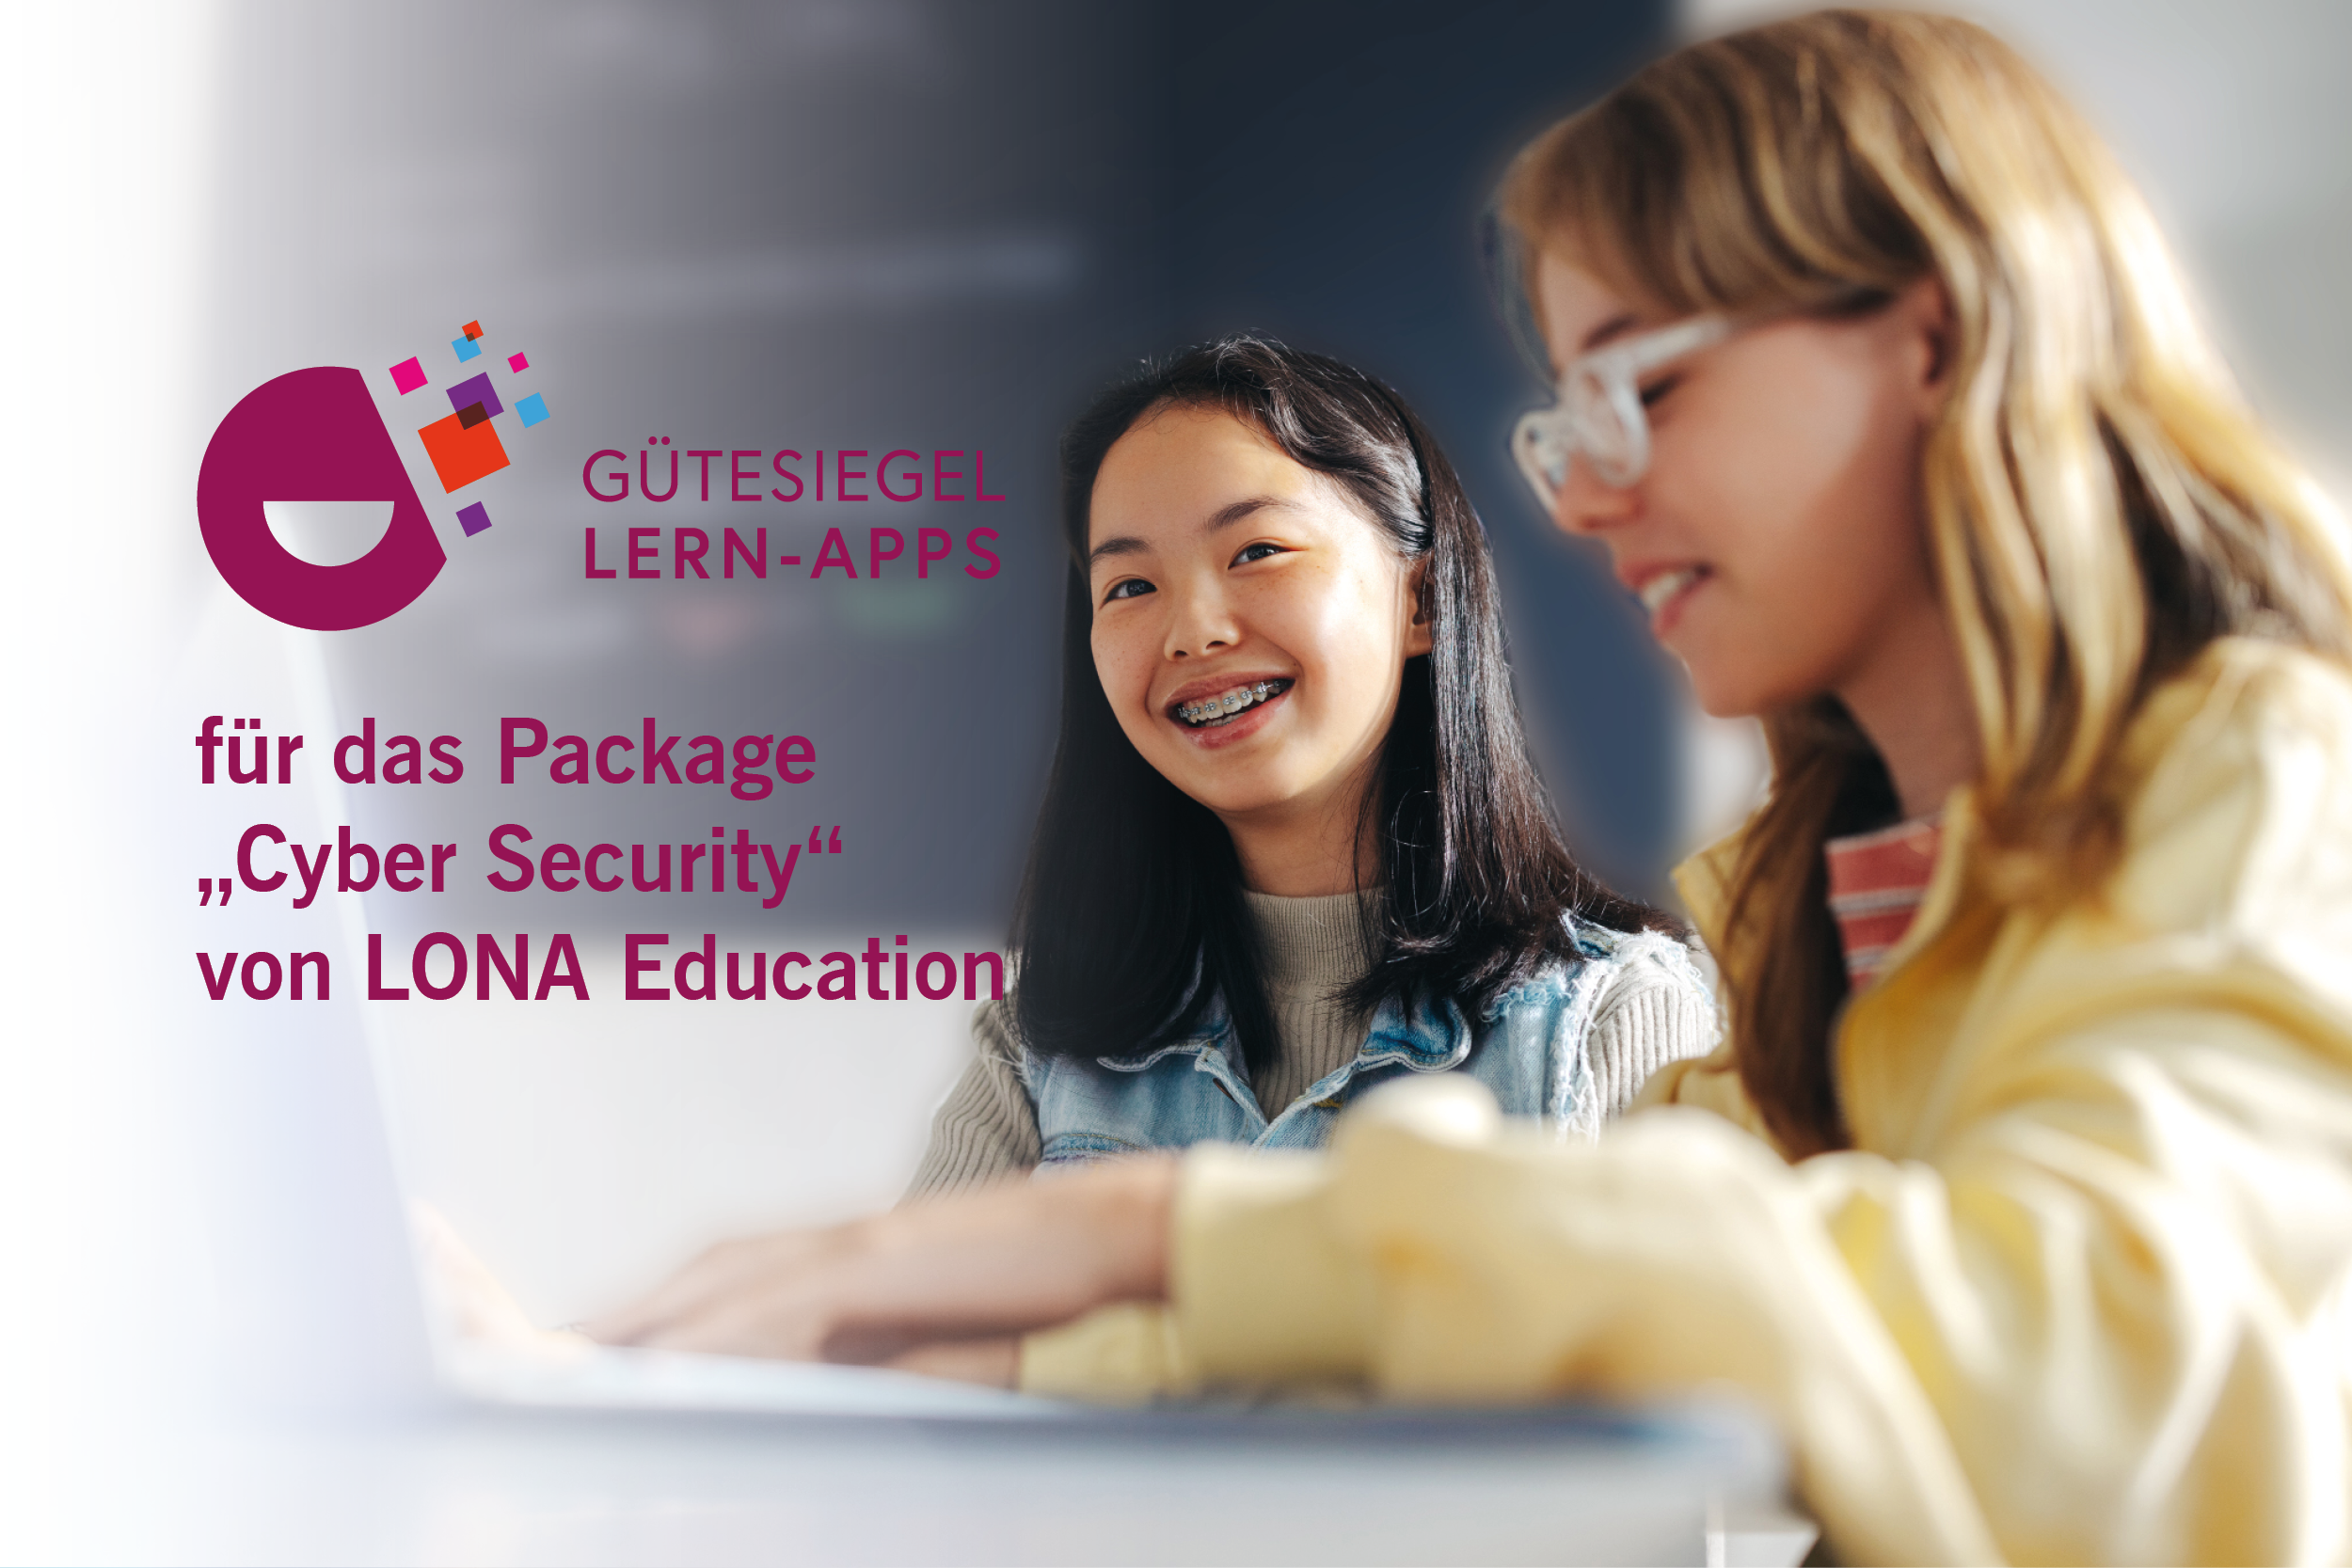 Gütesiegel Lern-Apps für LONA Education für das Lernpaket "Cyber Security"